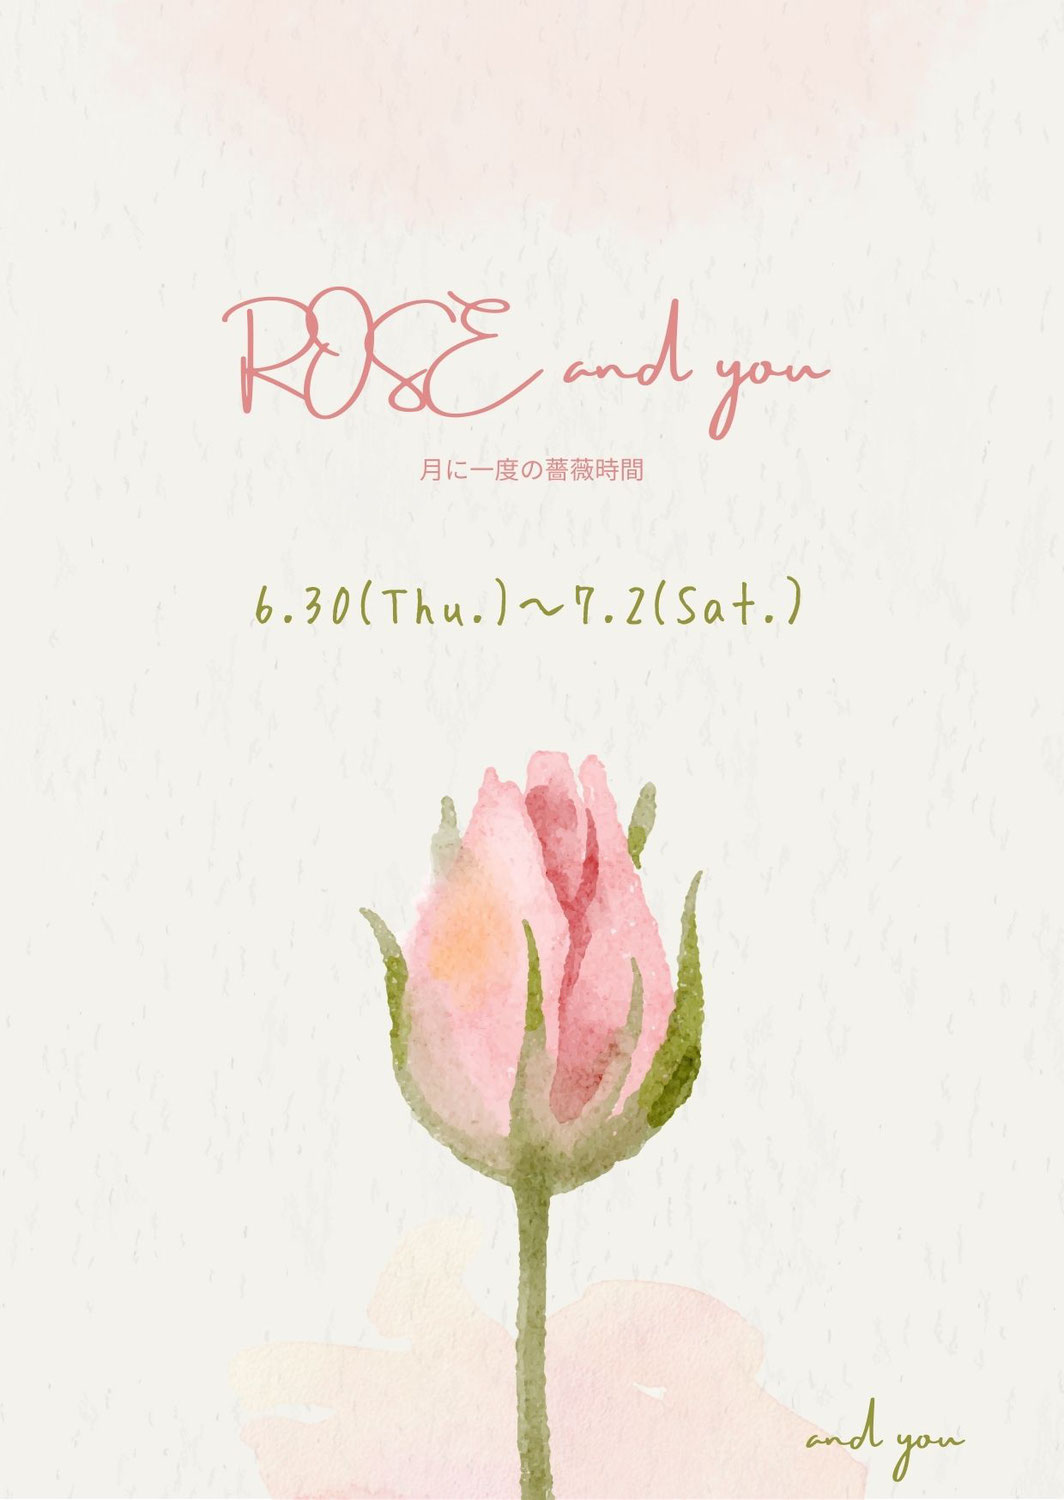 6月30日,7月1日,2日／ROSE and you